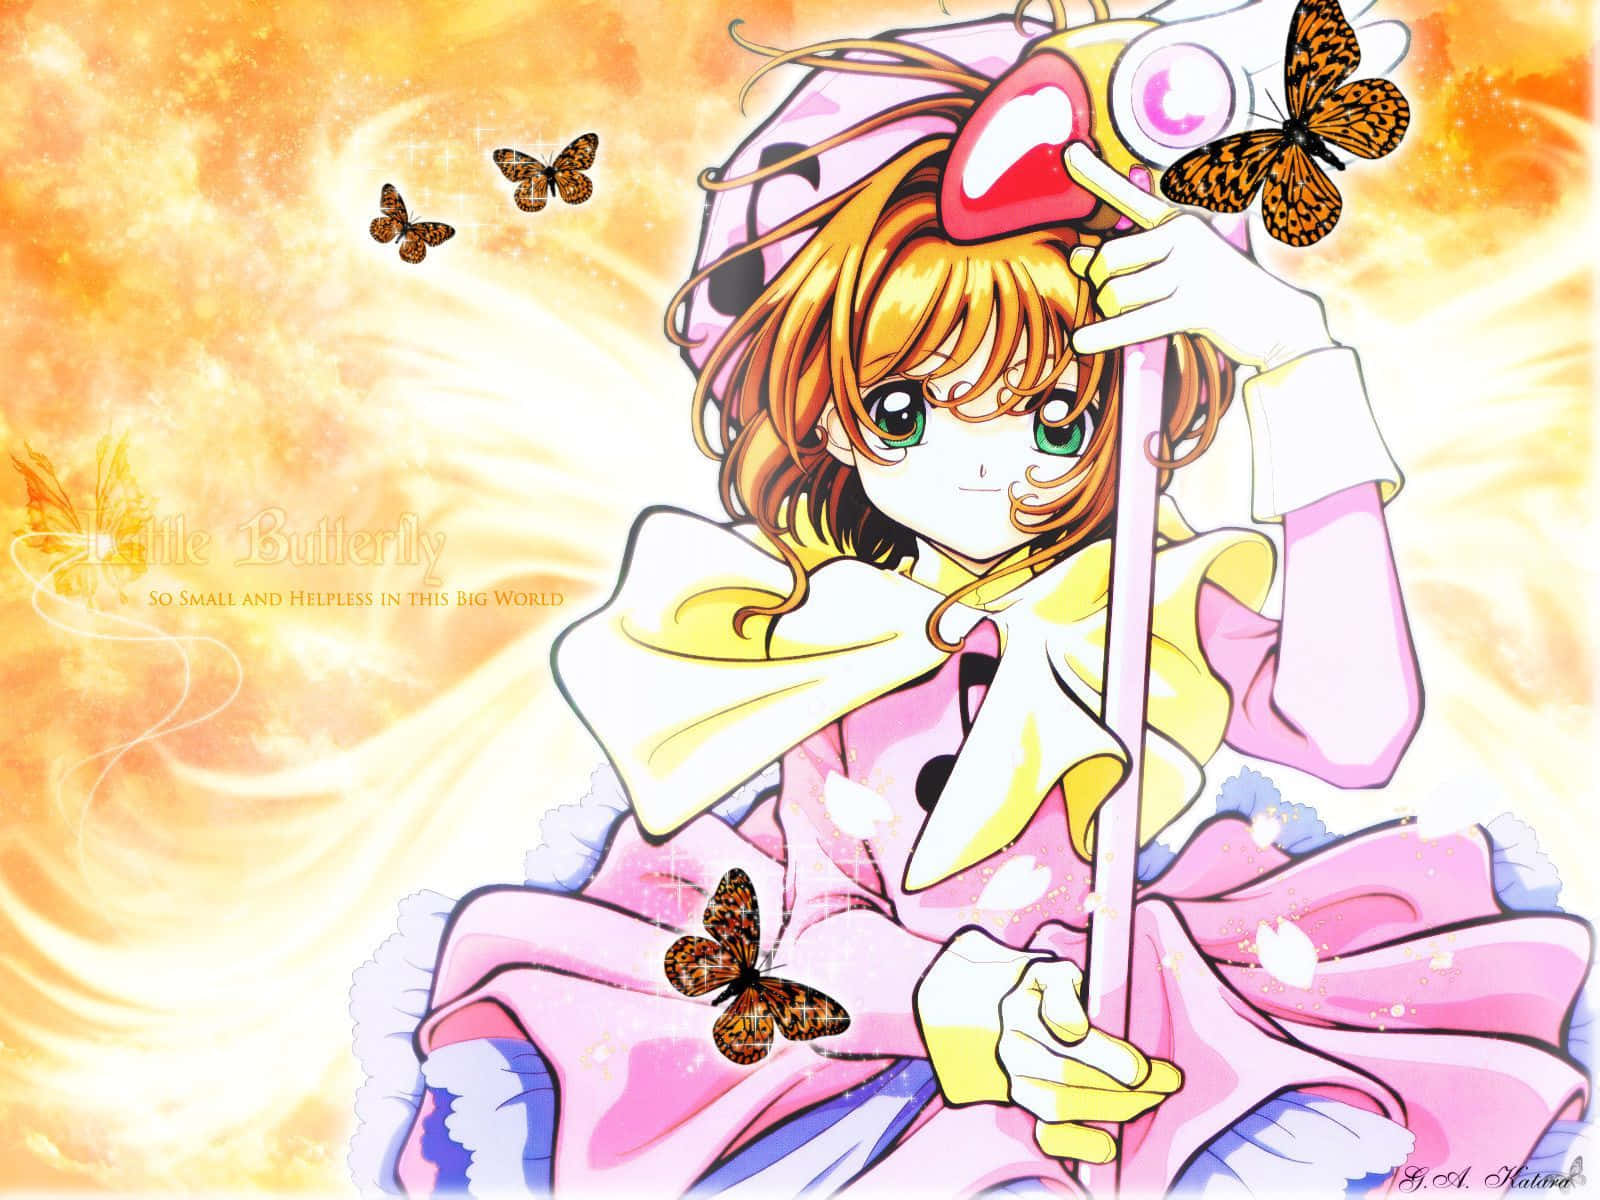 "Dreams come true with Cardcaptor Sakura"